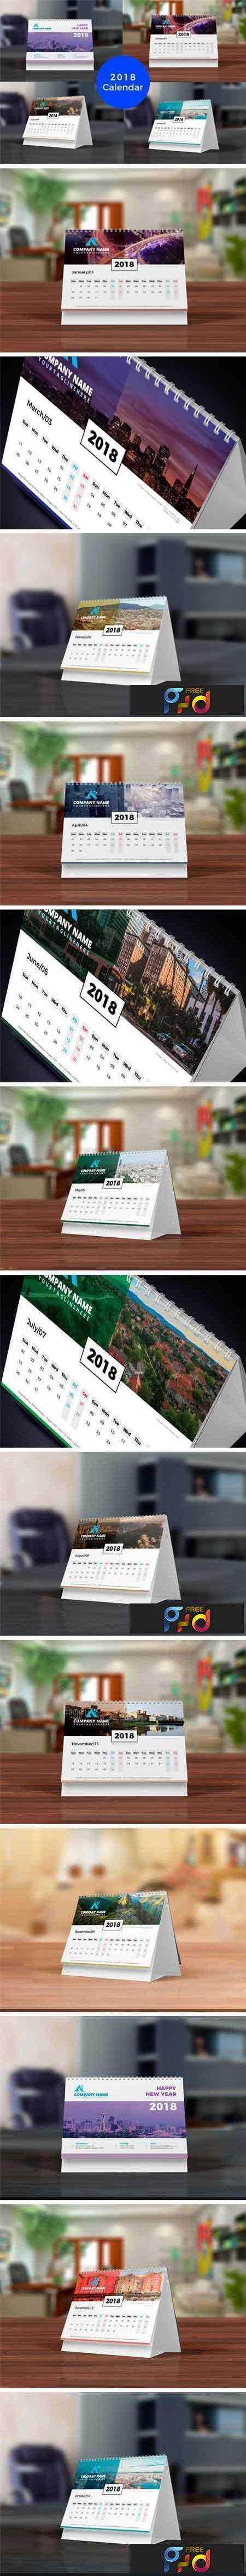 1707191 Desk Calendar 2018 1911121 1